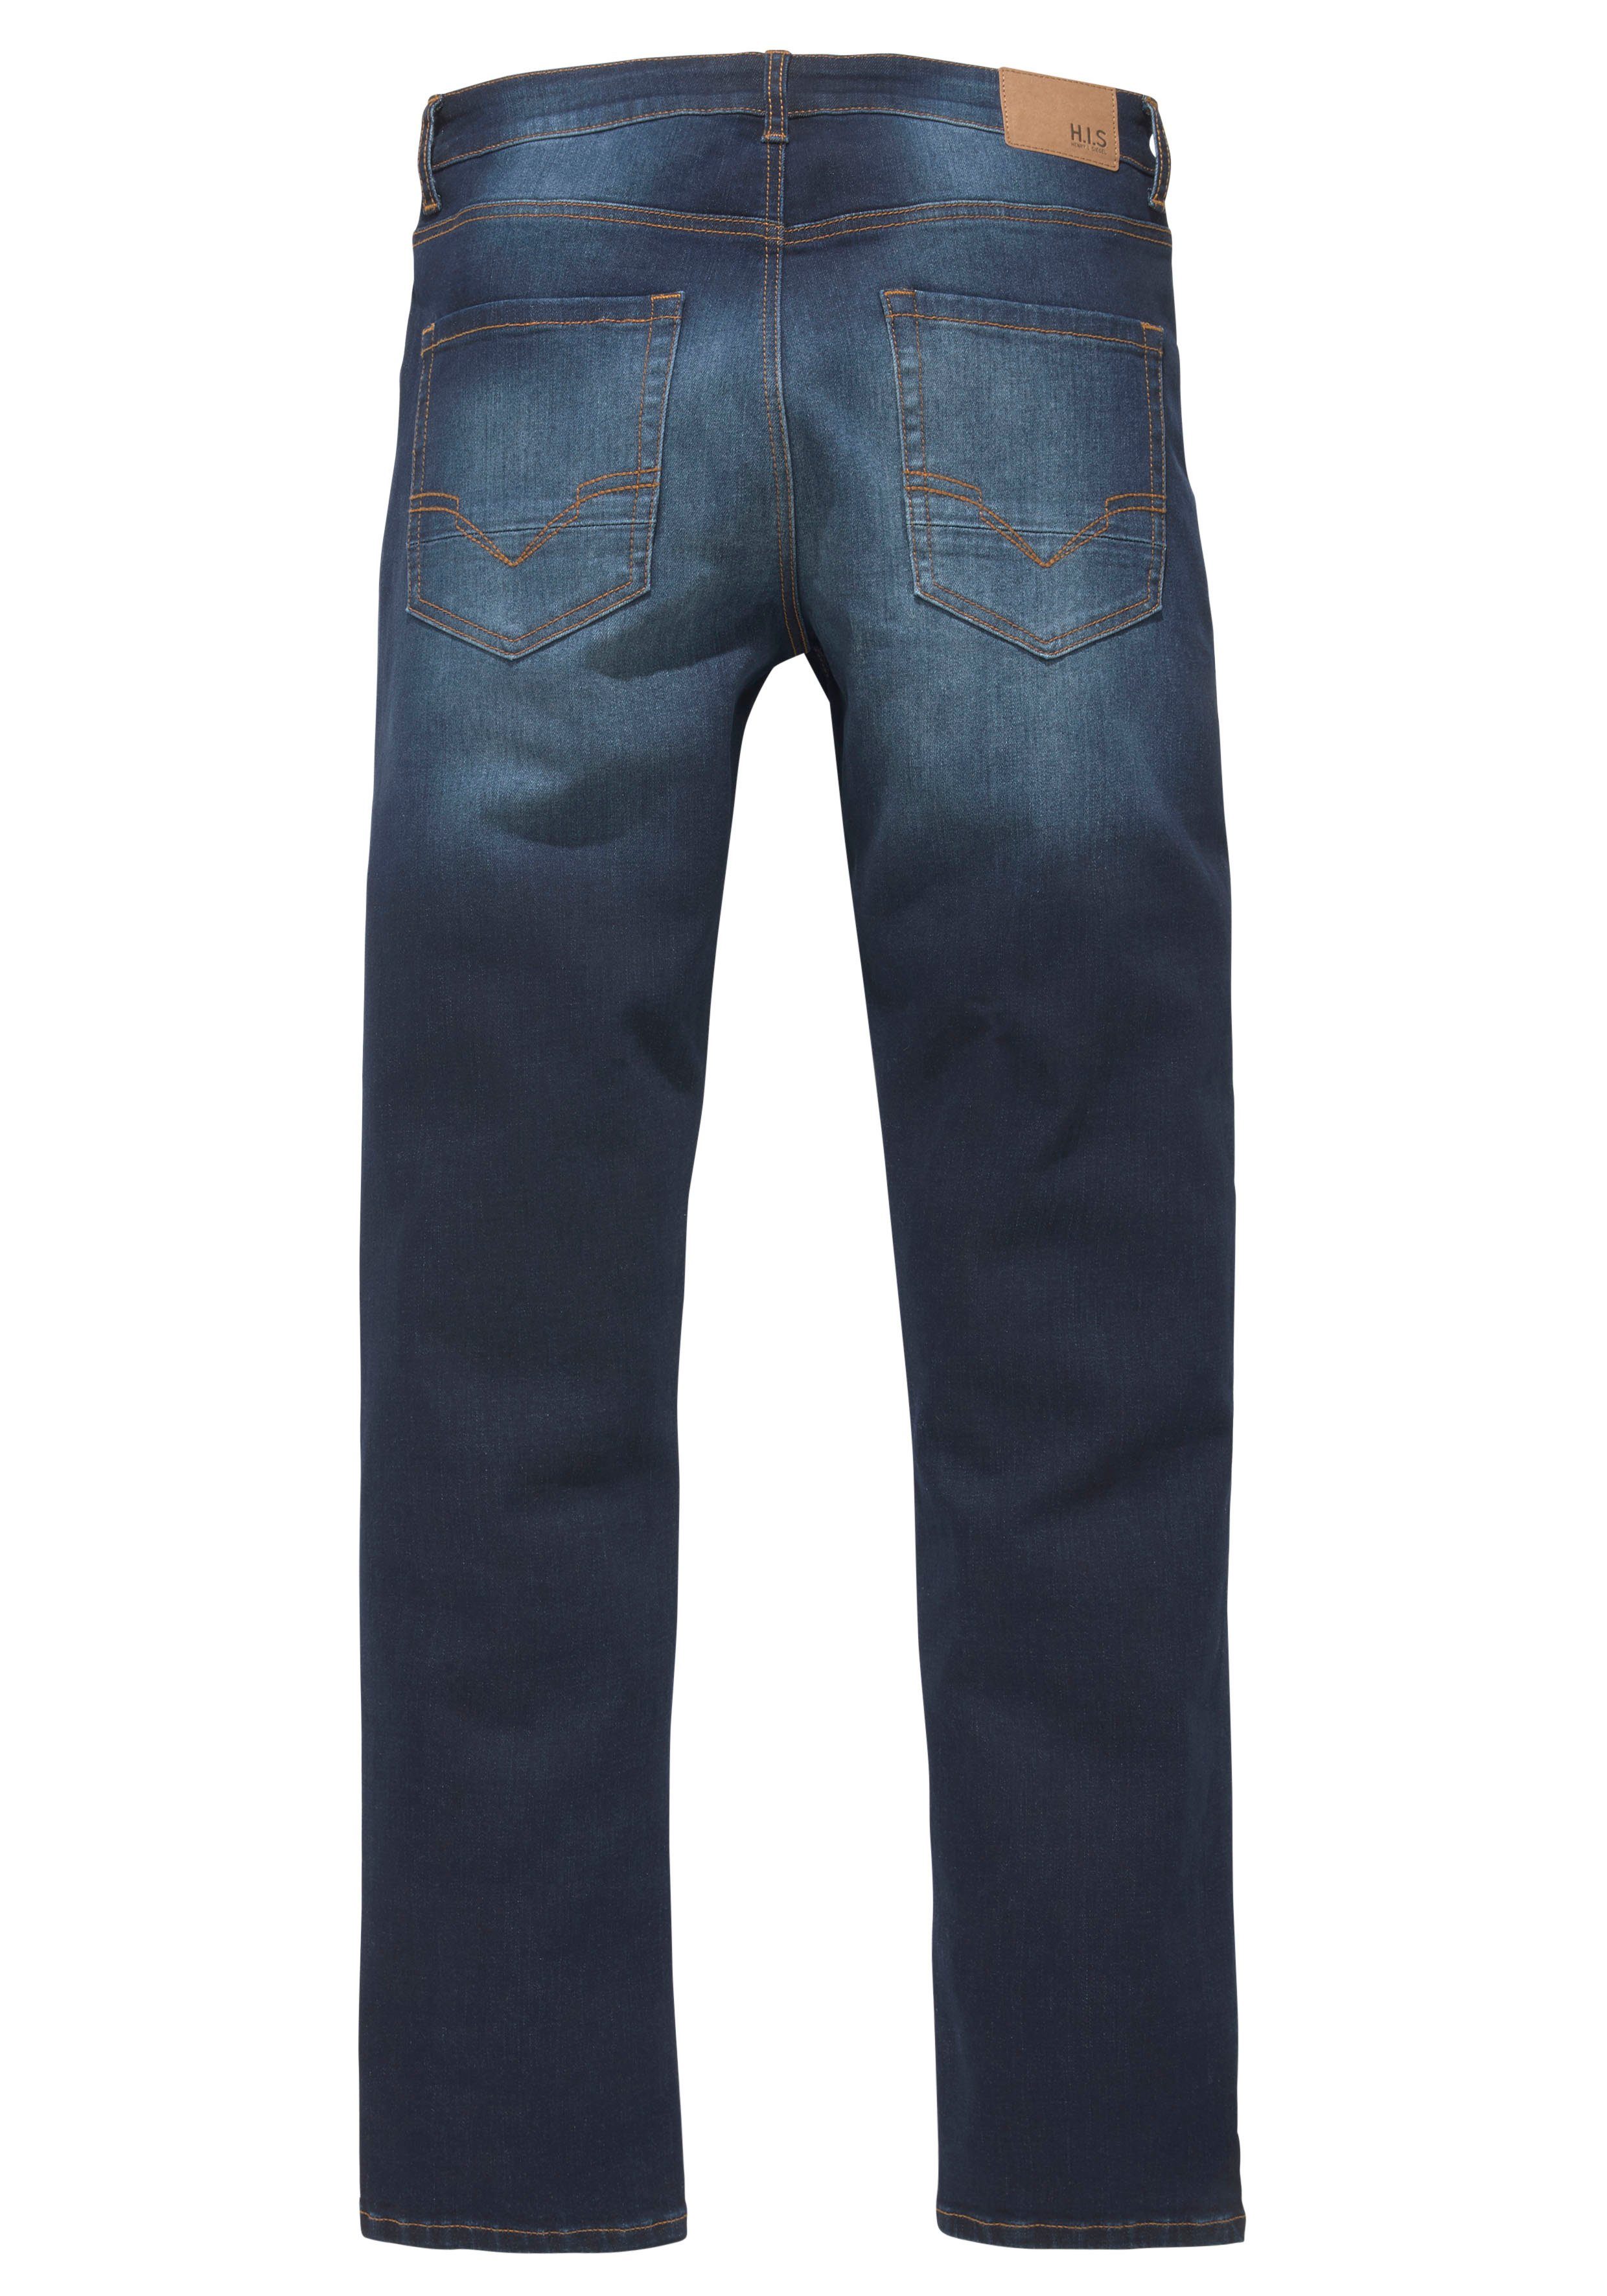 H.I.S Straight-Jeans Ozon darkblue-used Wash DIX Ökologische, wassersparende Produktion durch